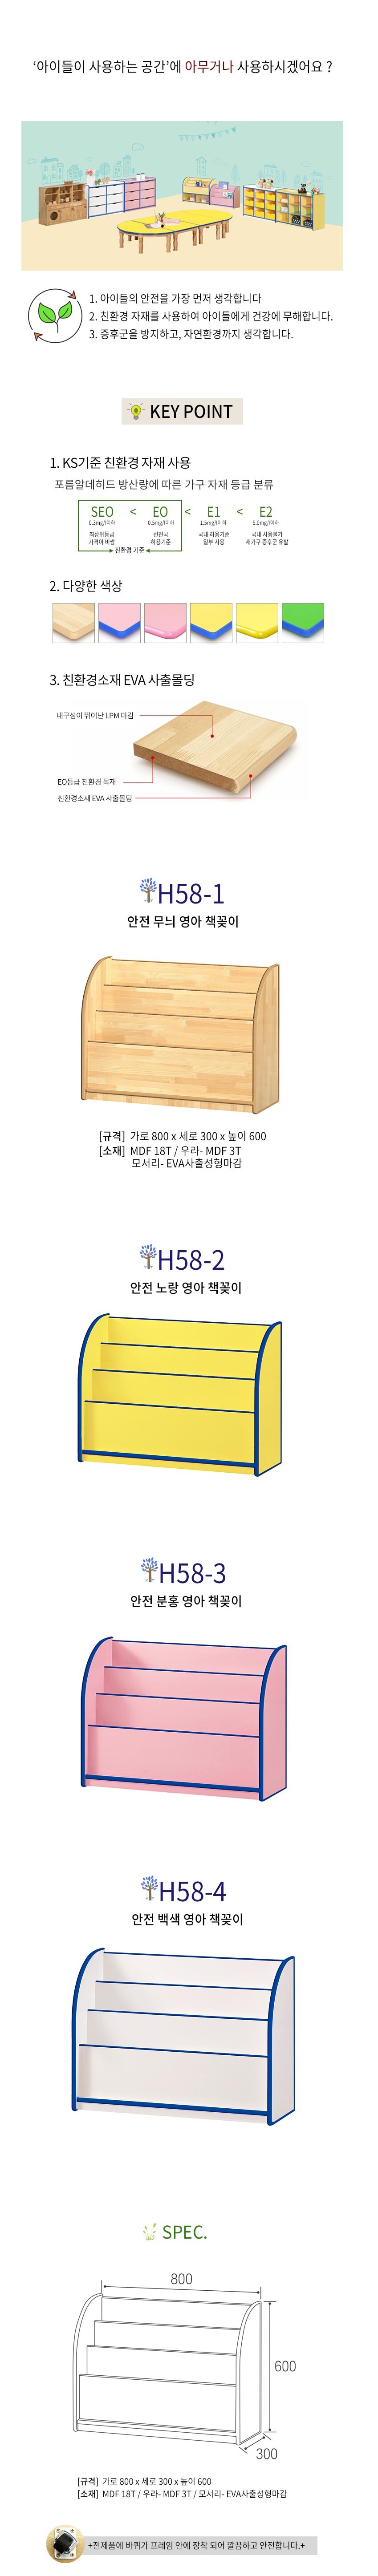 안전 무늬 영아 어린이 책꽂이 H58-1 